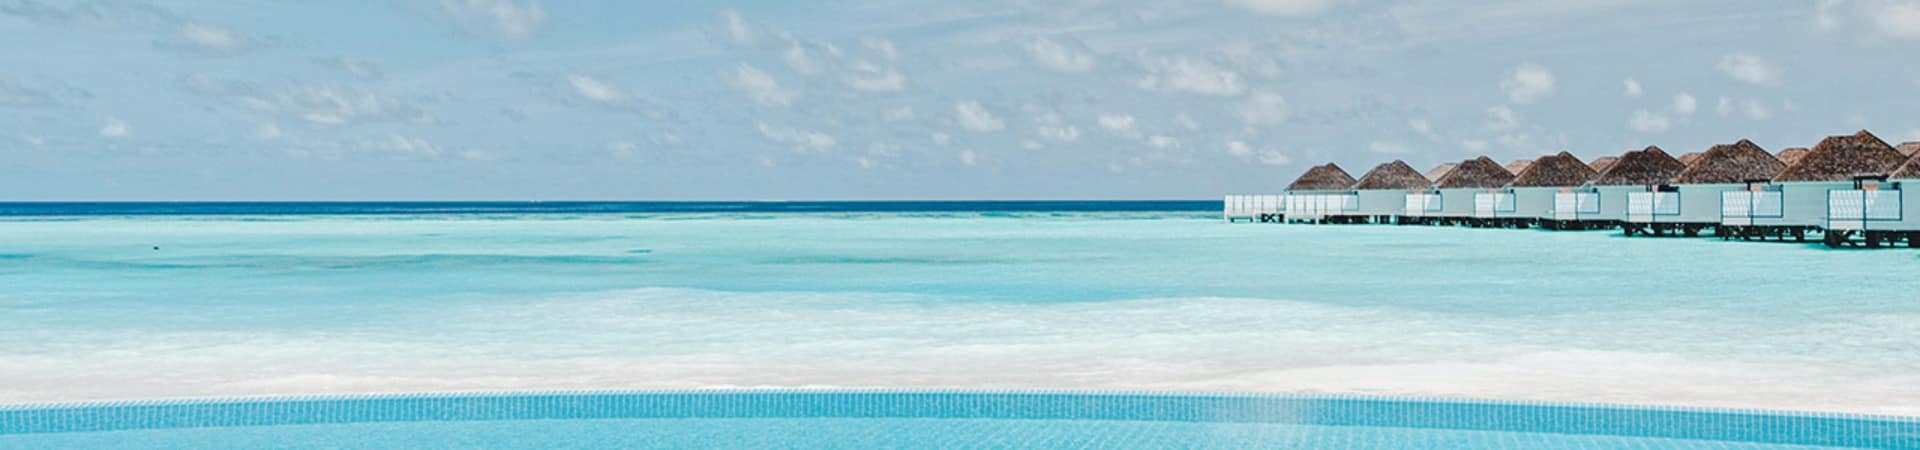 Nova maldives piscina